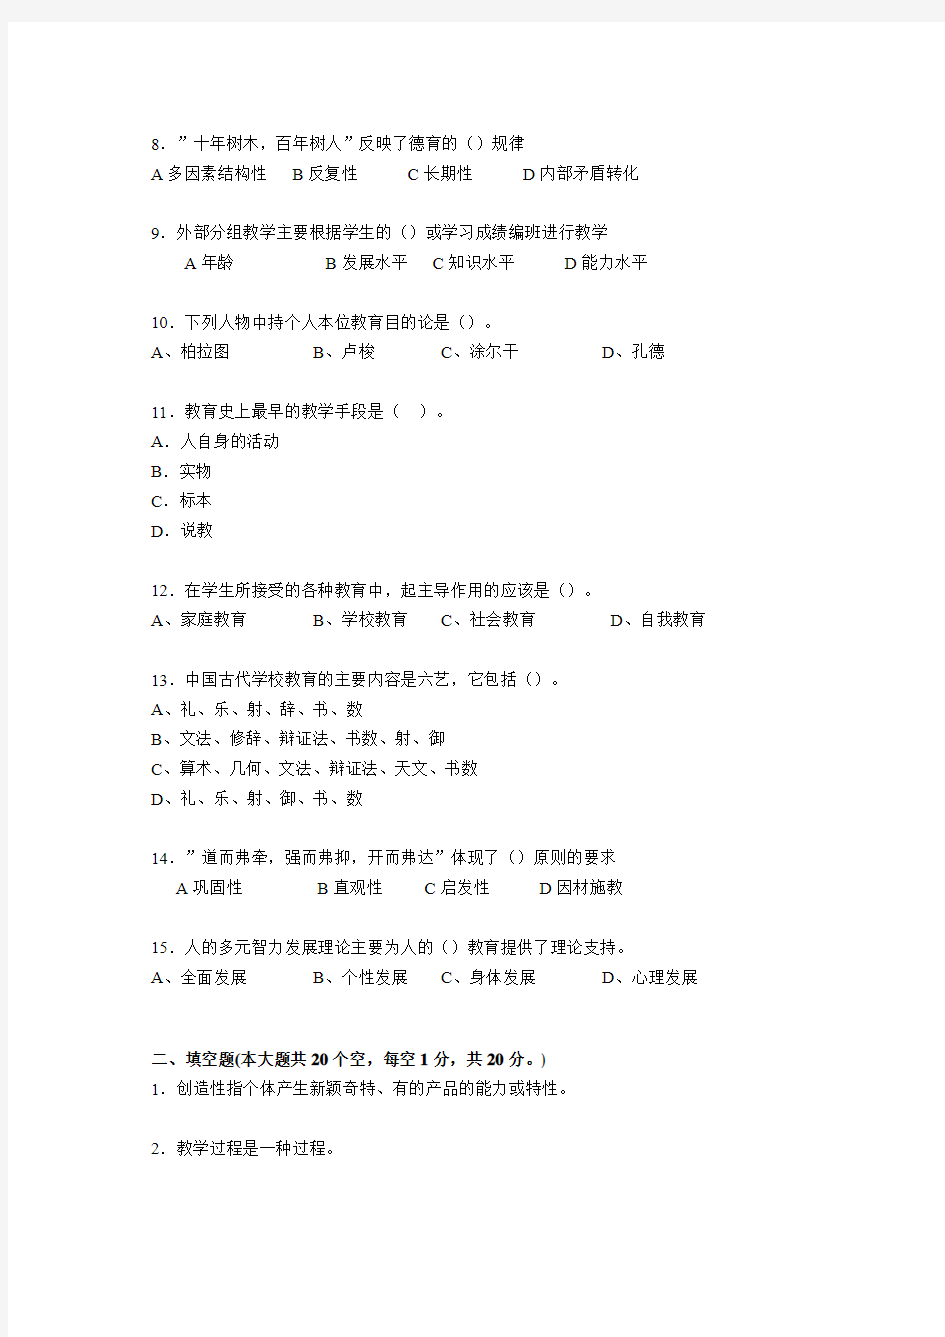 2016年河北省小学教师教师资格证考试《综合素质》考试试卷